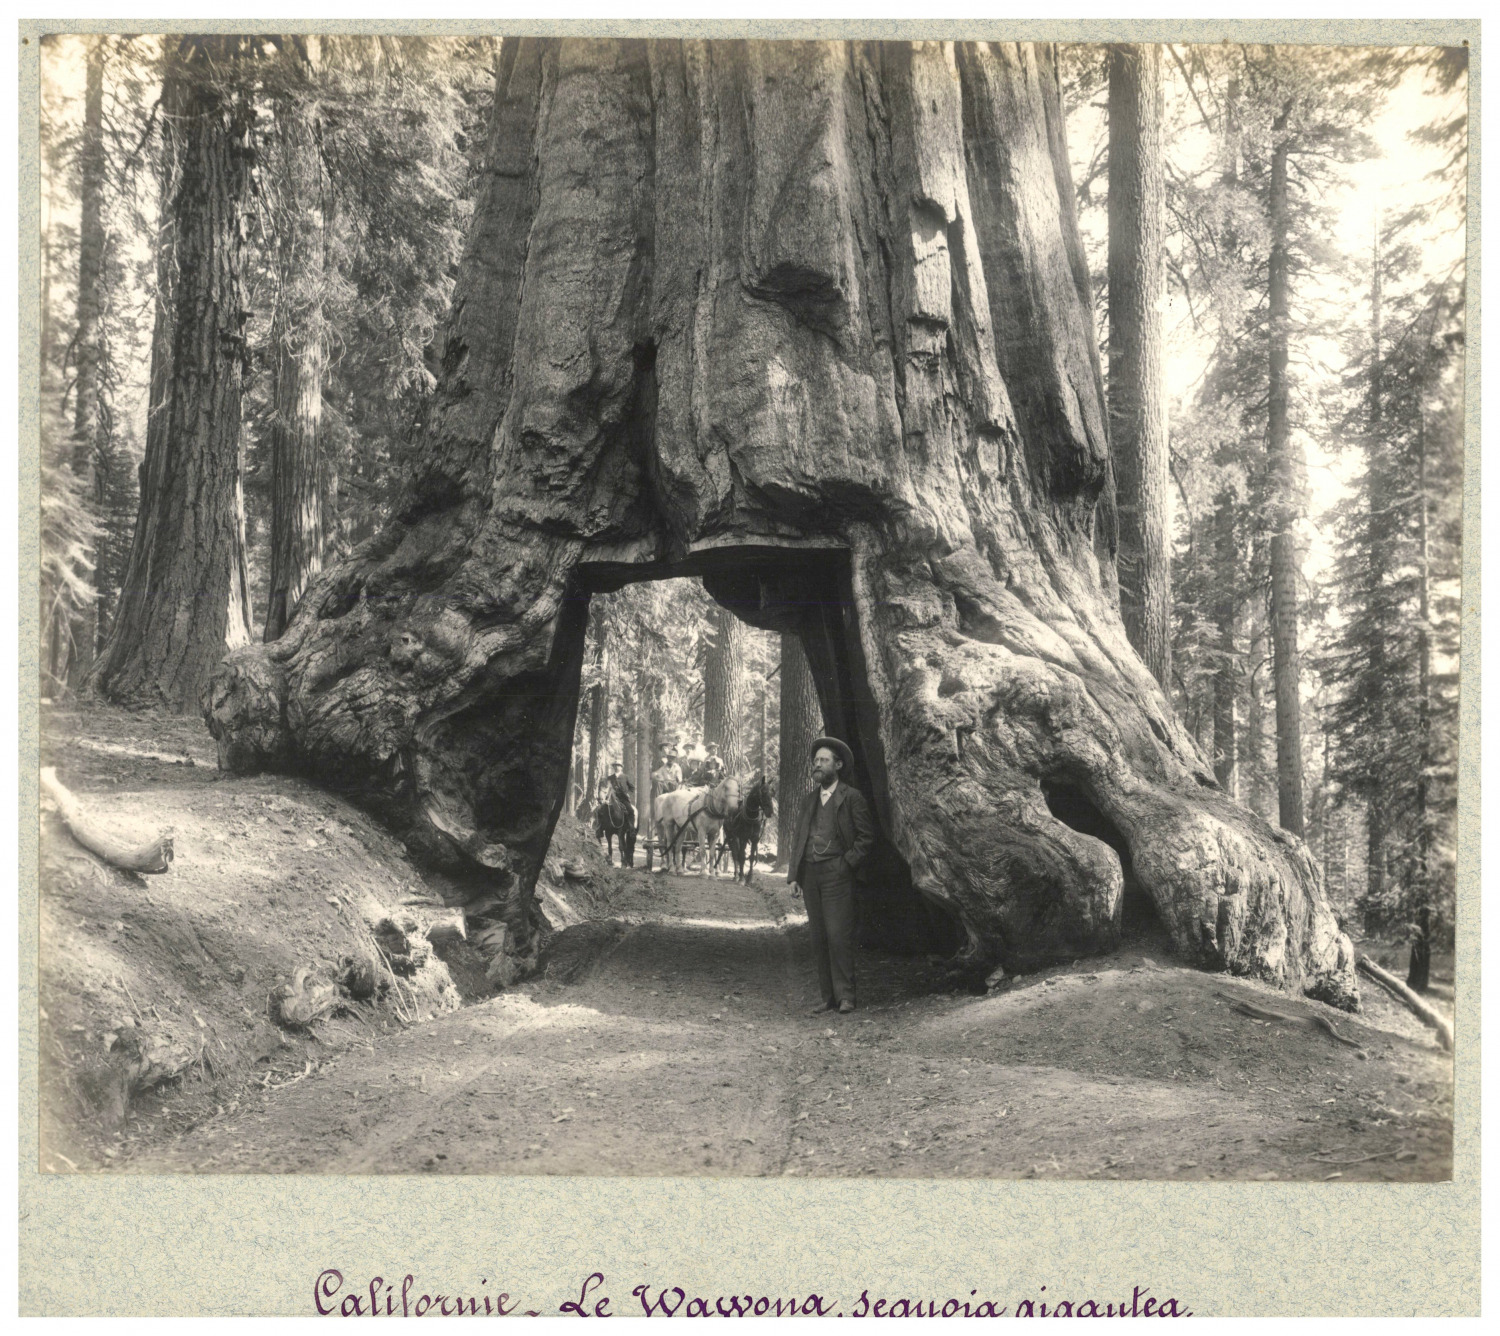 California, The Wawona, Vintage Print Giant Sequoia, Silver Print 21.5